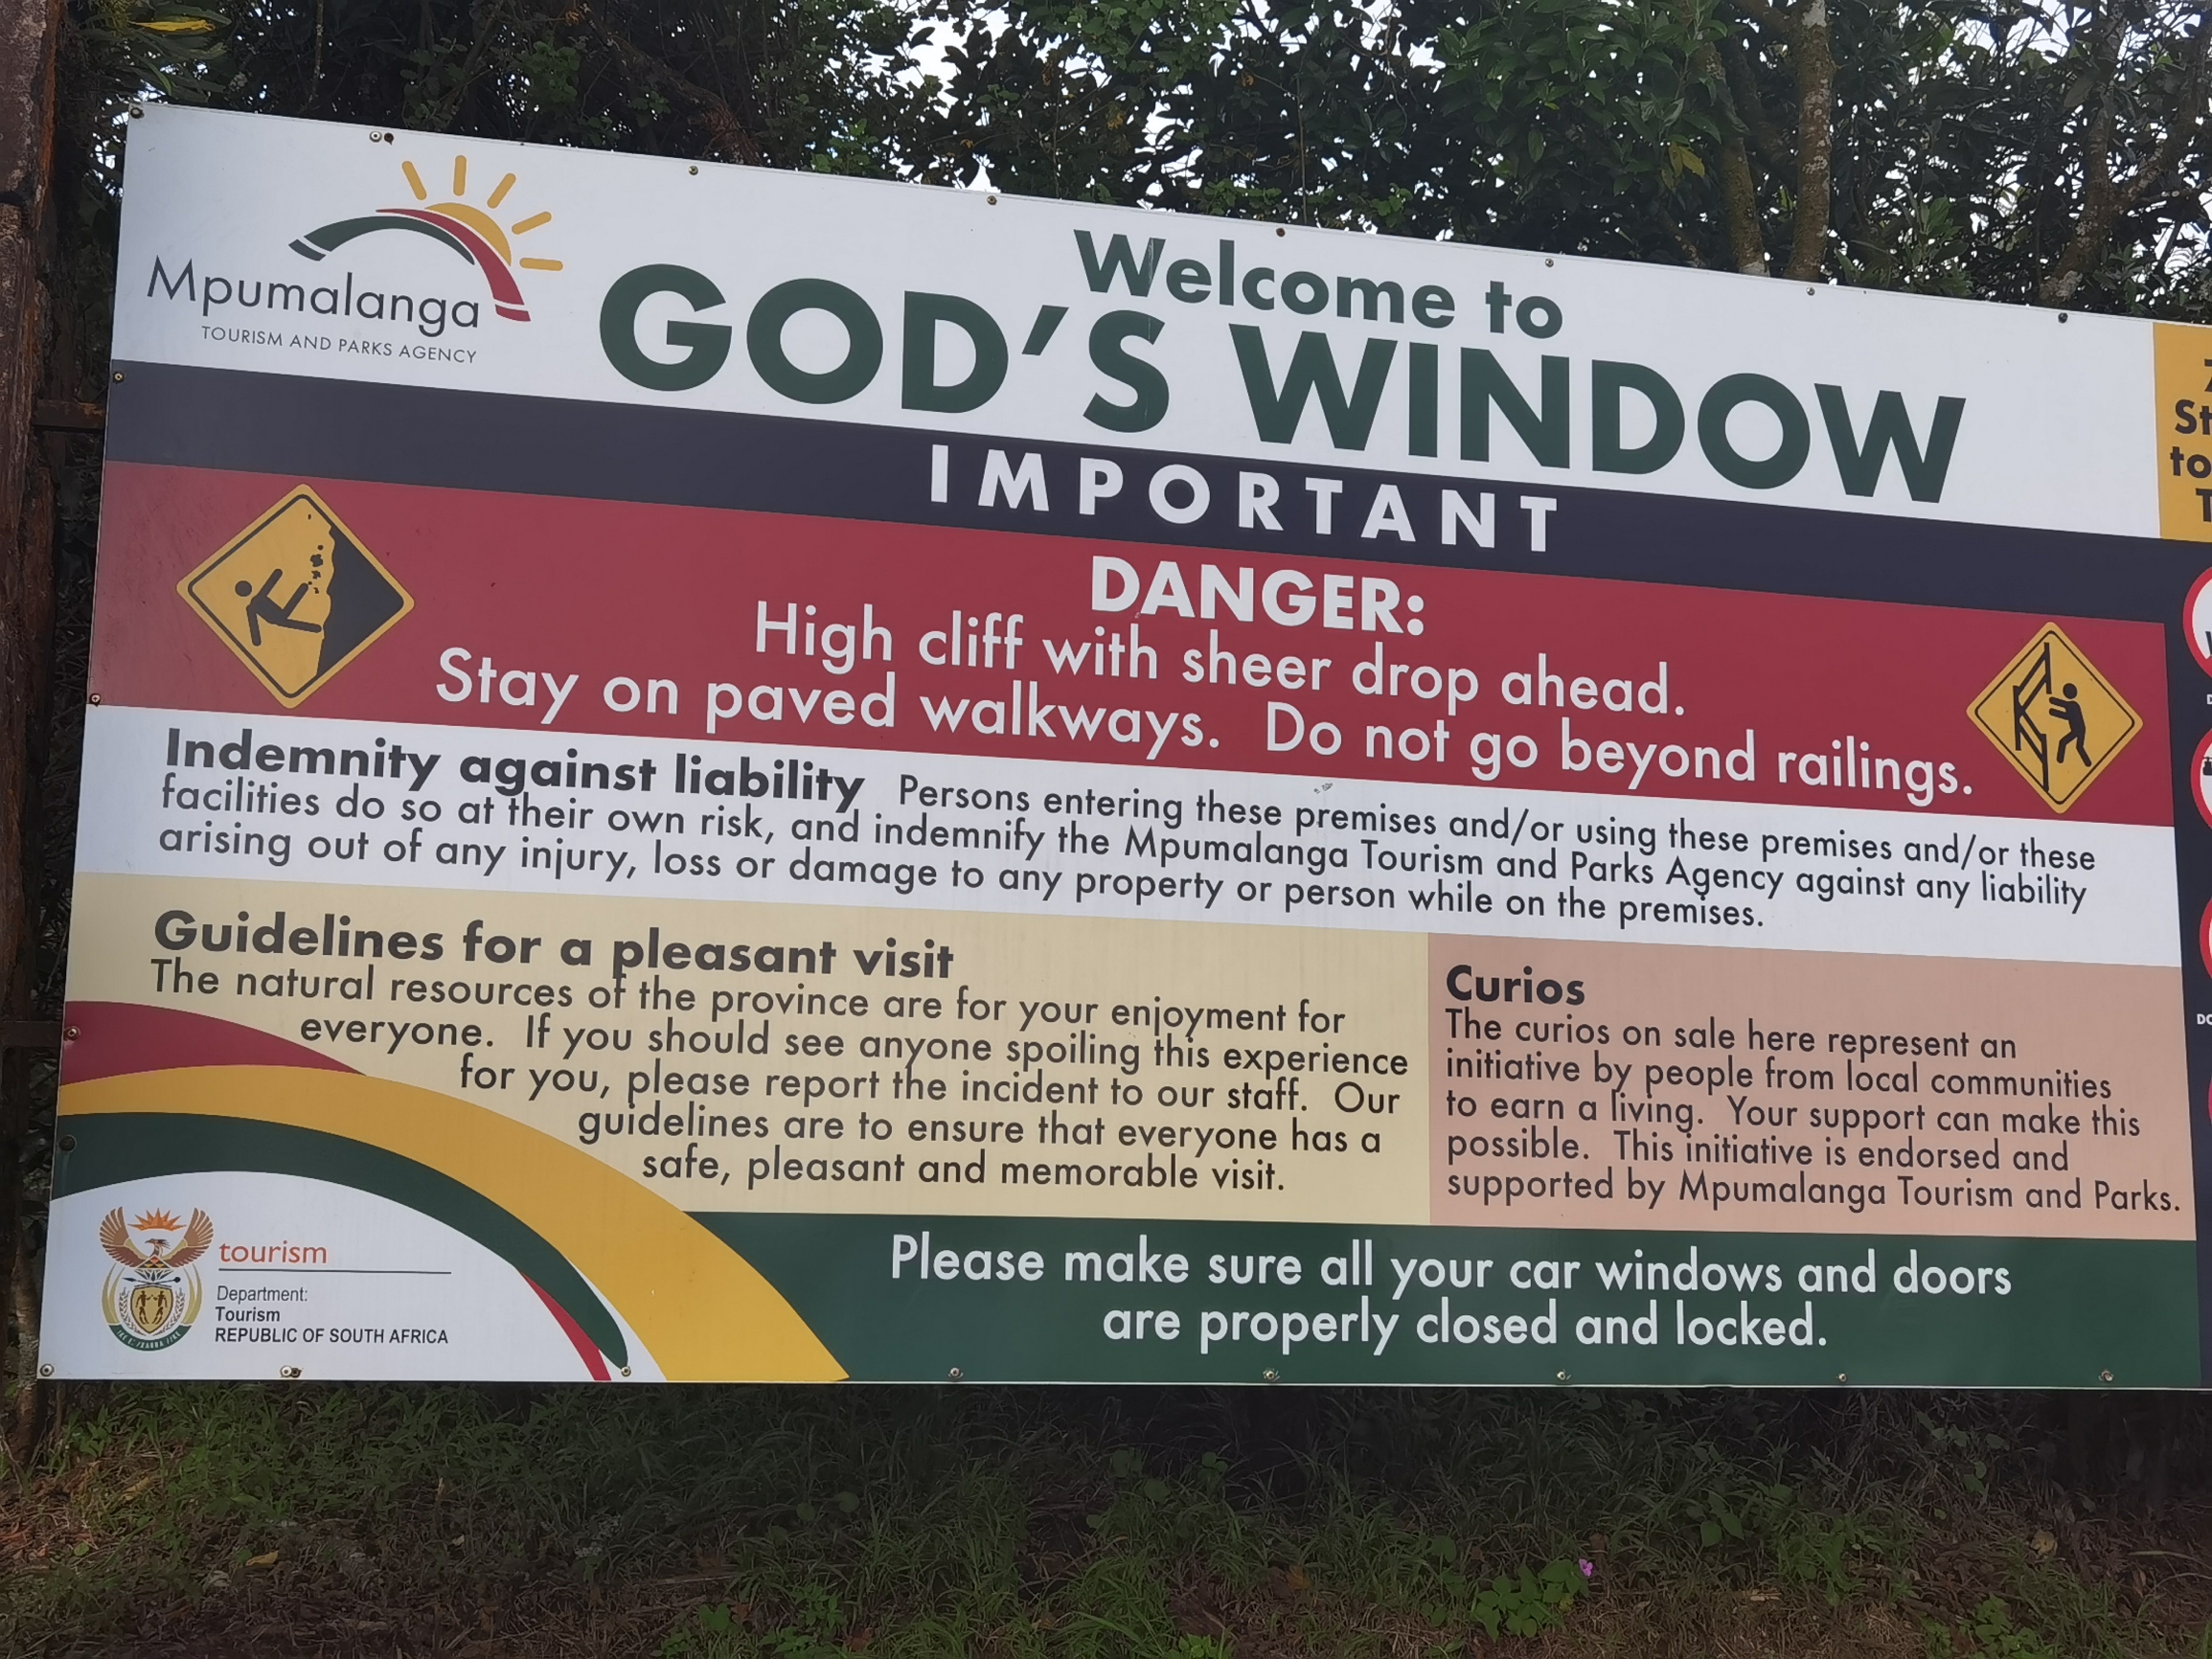 上帝之窗是布莱德河峡谷自然保护区南端位于陡坡边的一个眺望点，当天气晴朗窗帘拉起来时，从这里可以俯瞰一